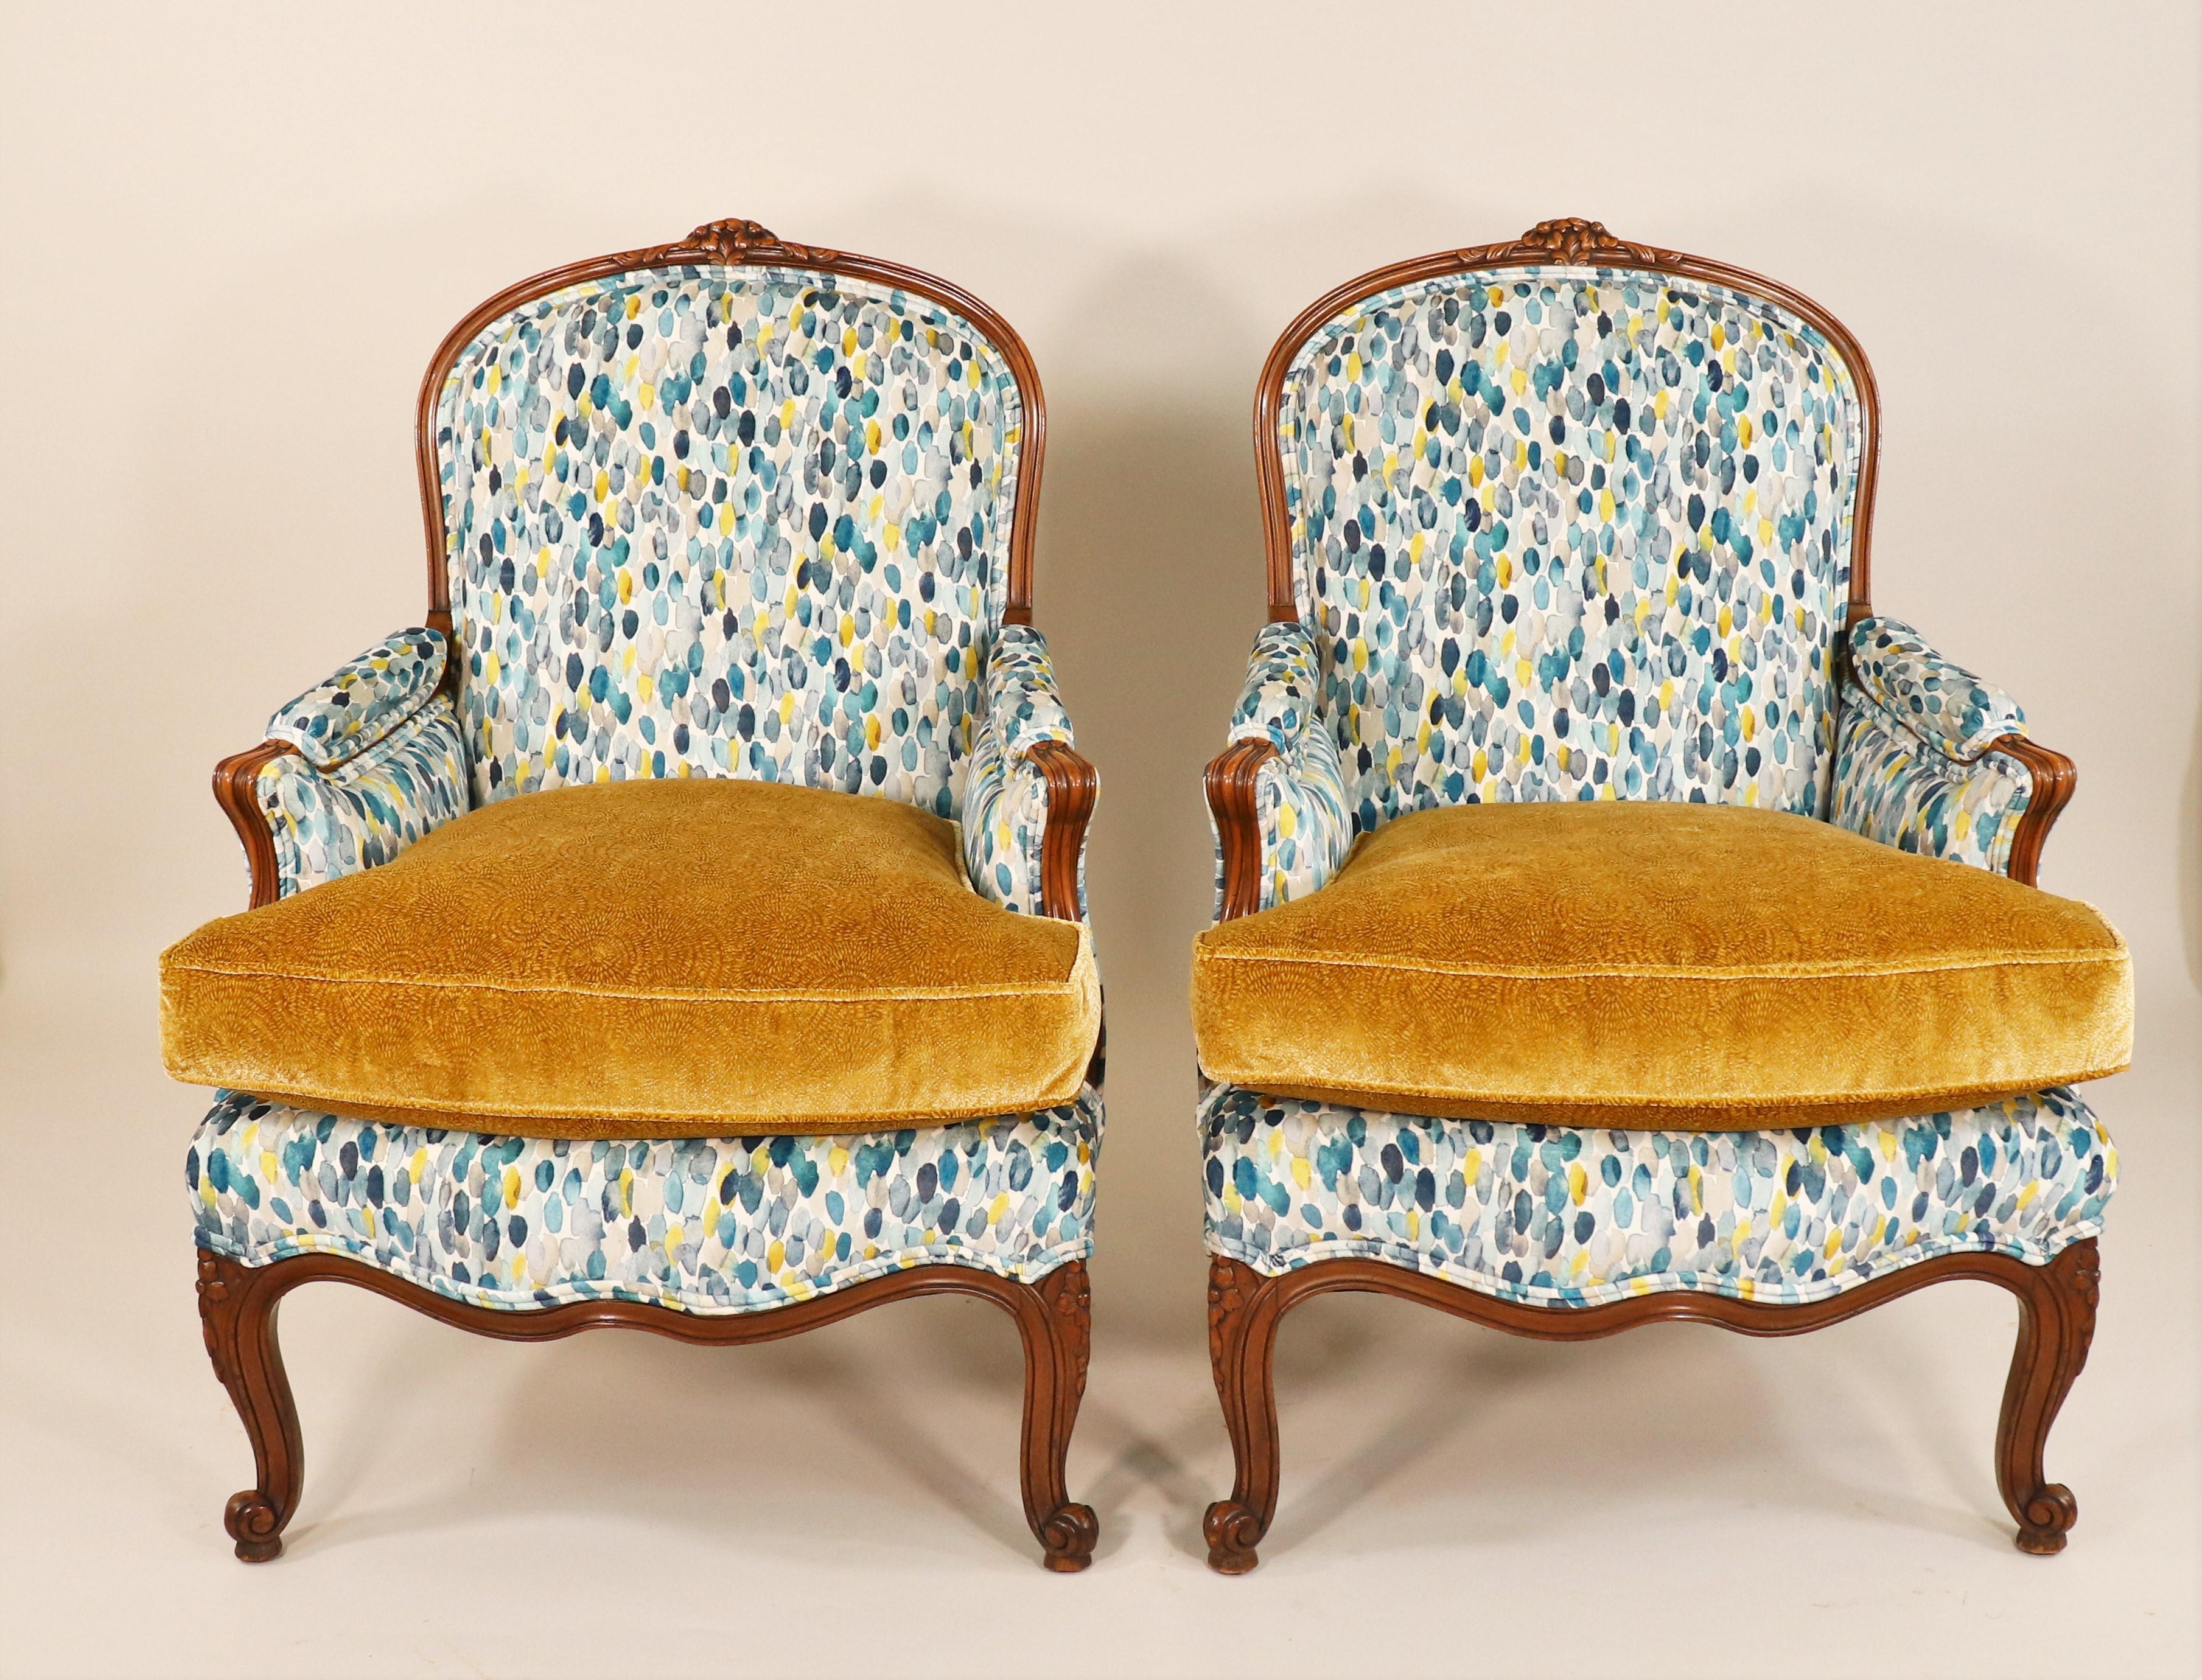 Il s'agit d'une paire exquise de fauteuils Bergère de style Louis XV du milieu du XIXe siècle. Ce style était une réponse directe au style Louis XIV précédent, qui valorisait les meubles dégageant puissance et masculinité. Les meubles de style Louis